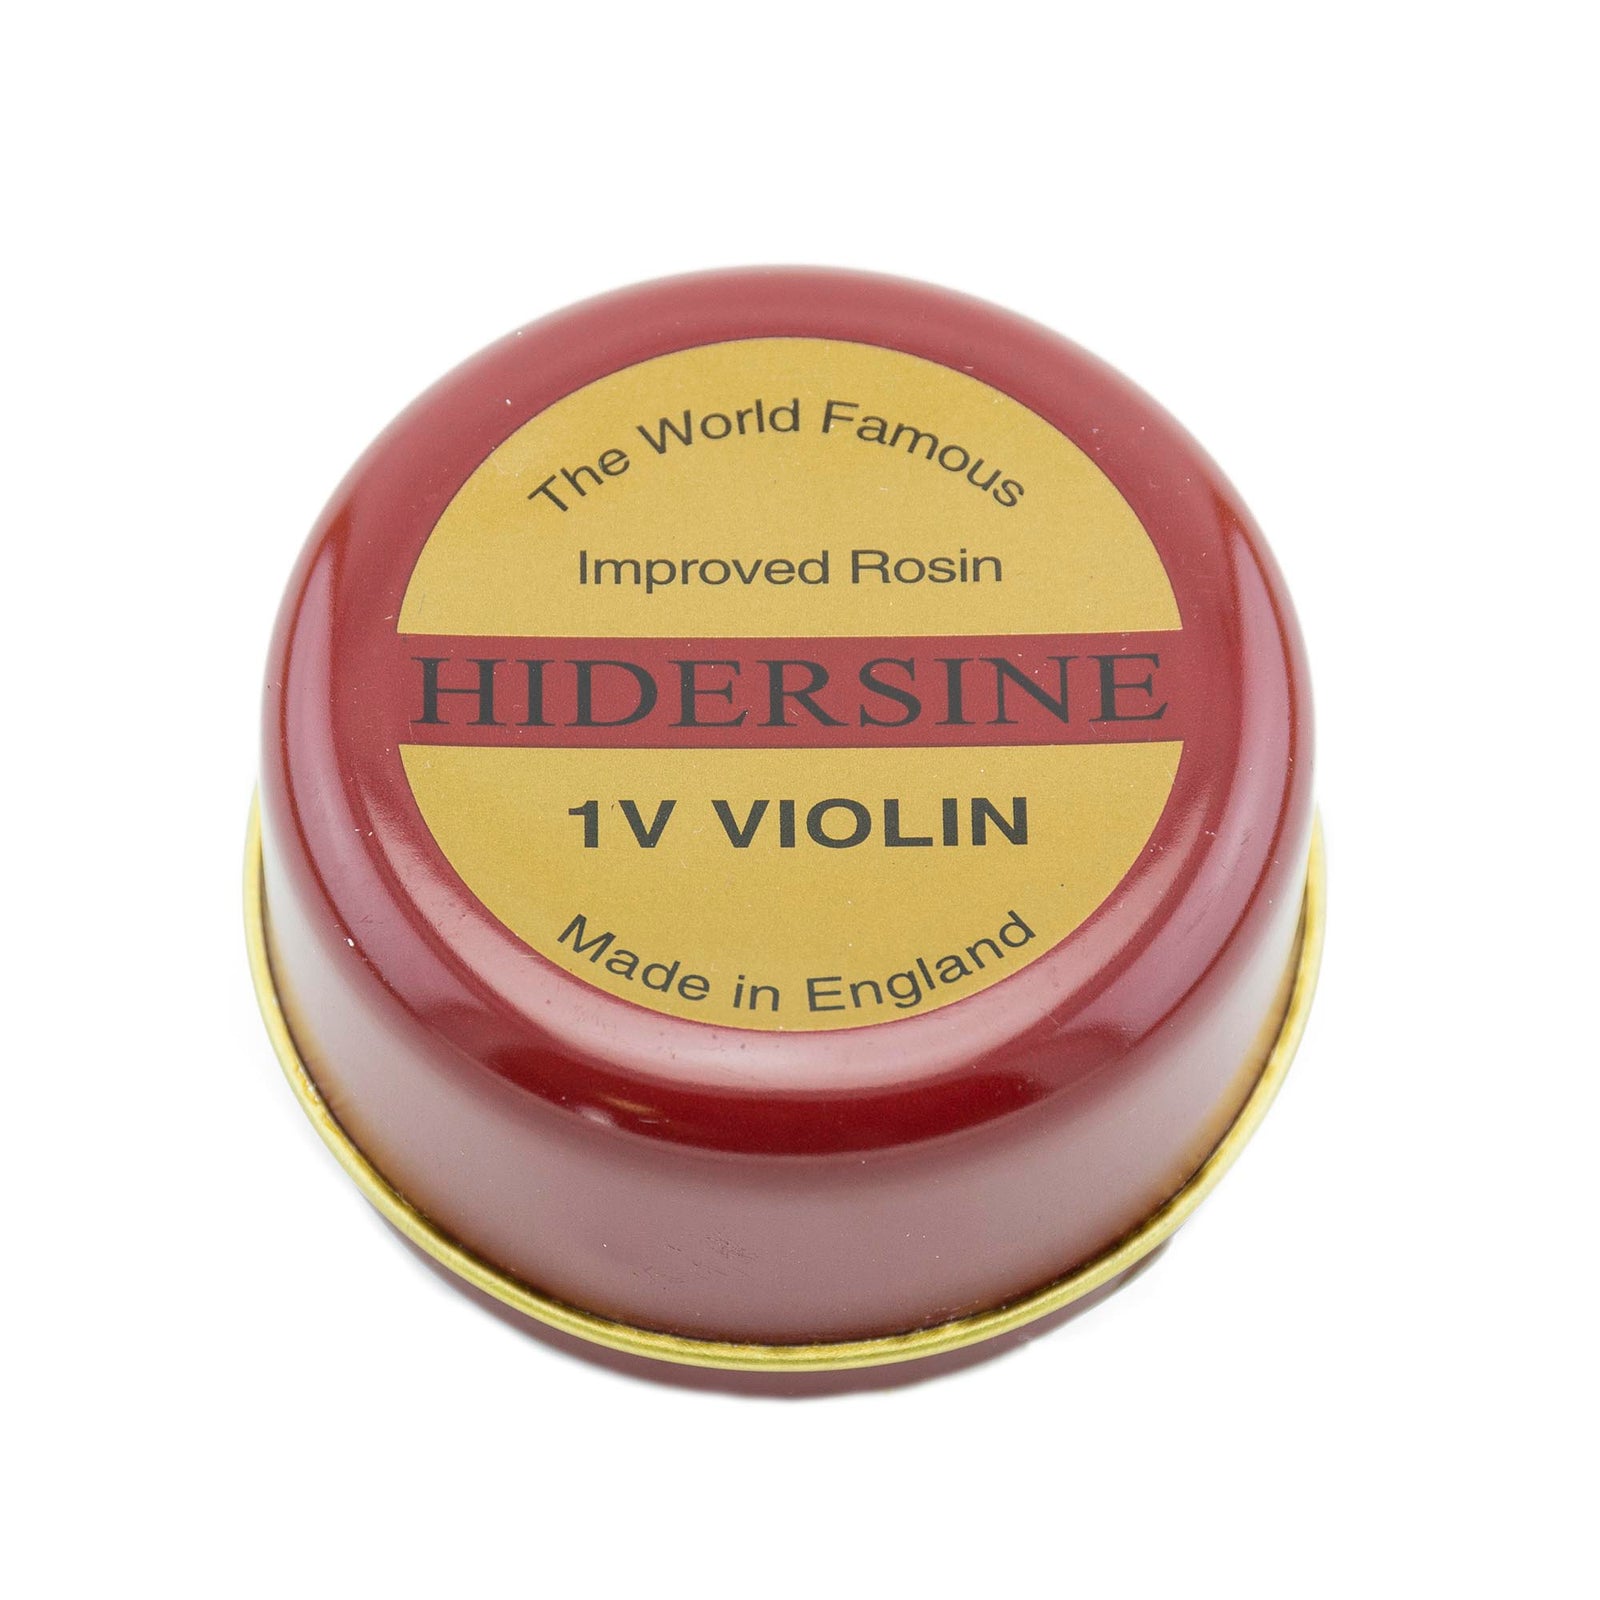 1V Violin - Hidersine Amber